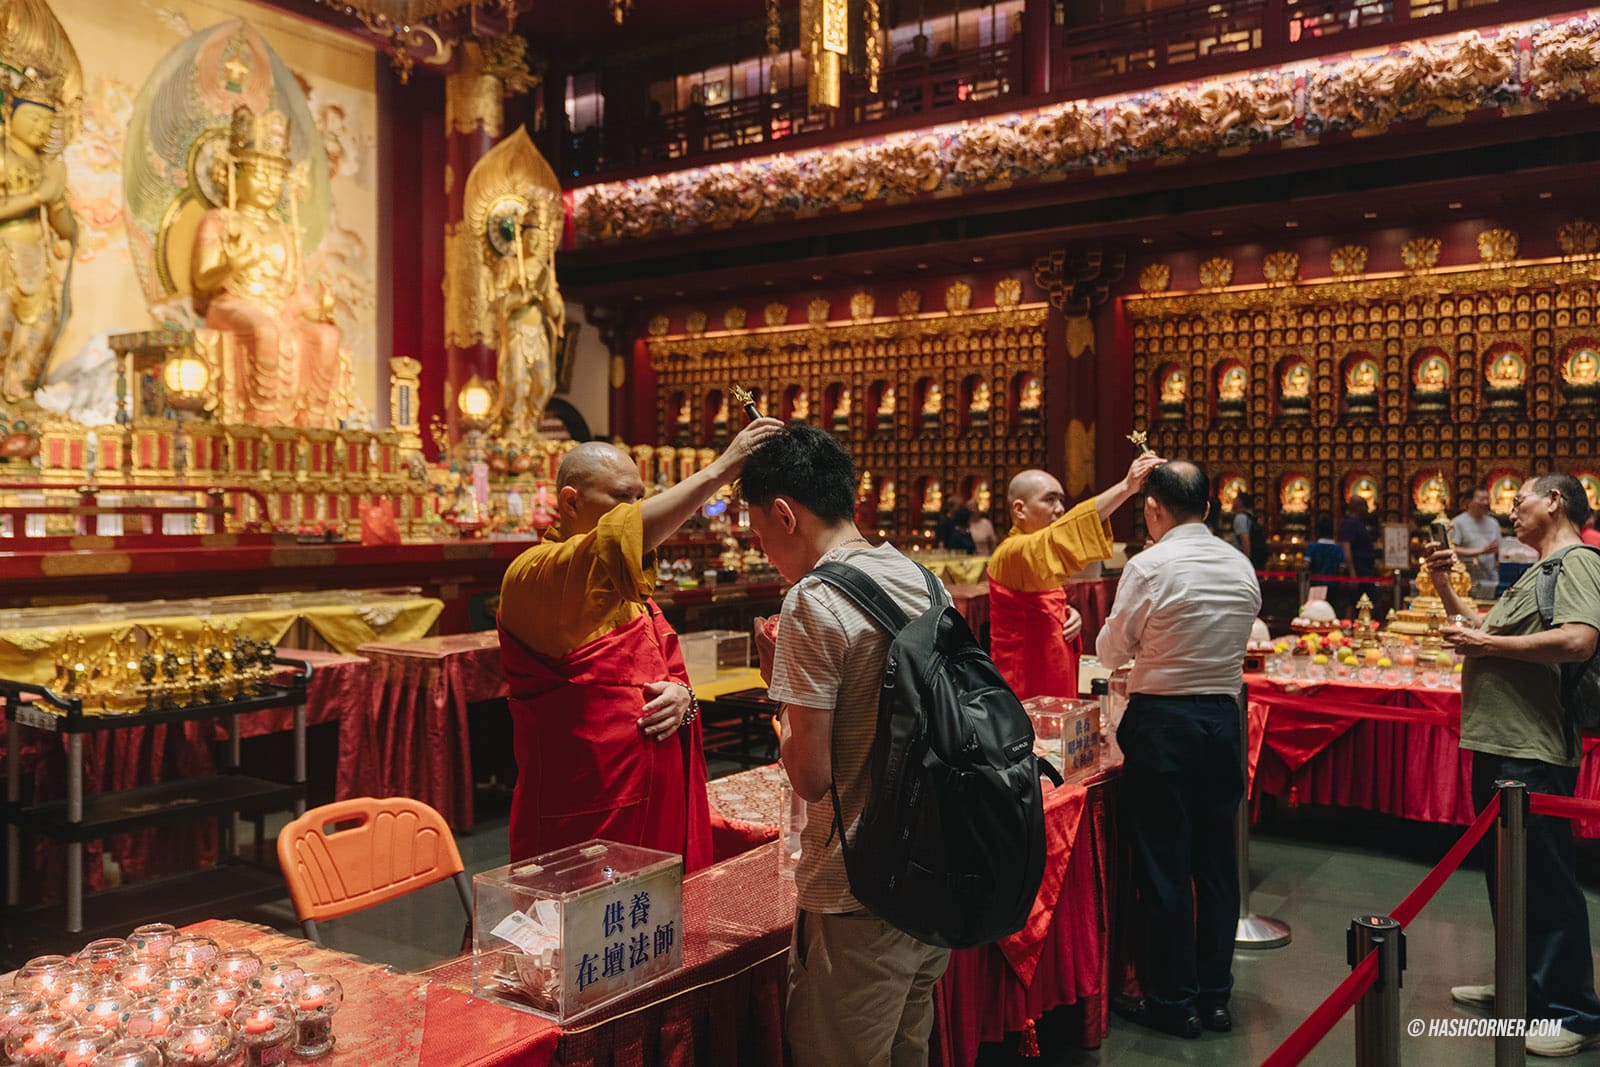 รีวิว วัดพระเขี้ยวแก้ว (Buddha Tooth Relic Temple) x สิงคโปร์